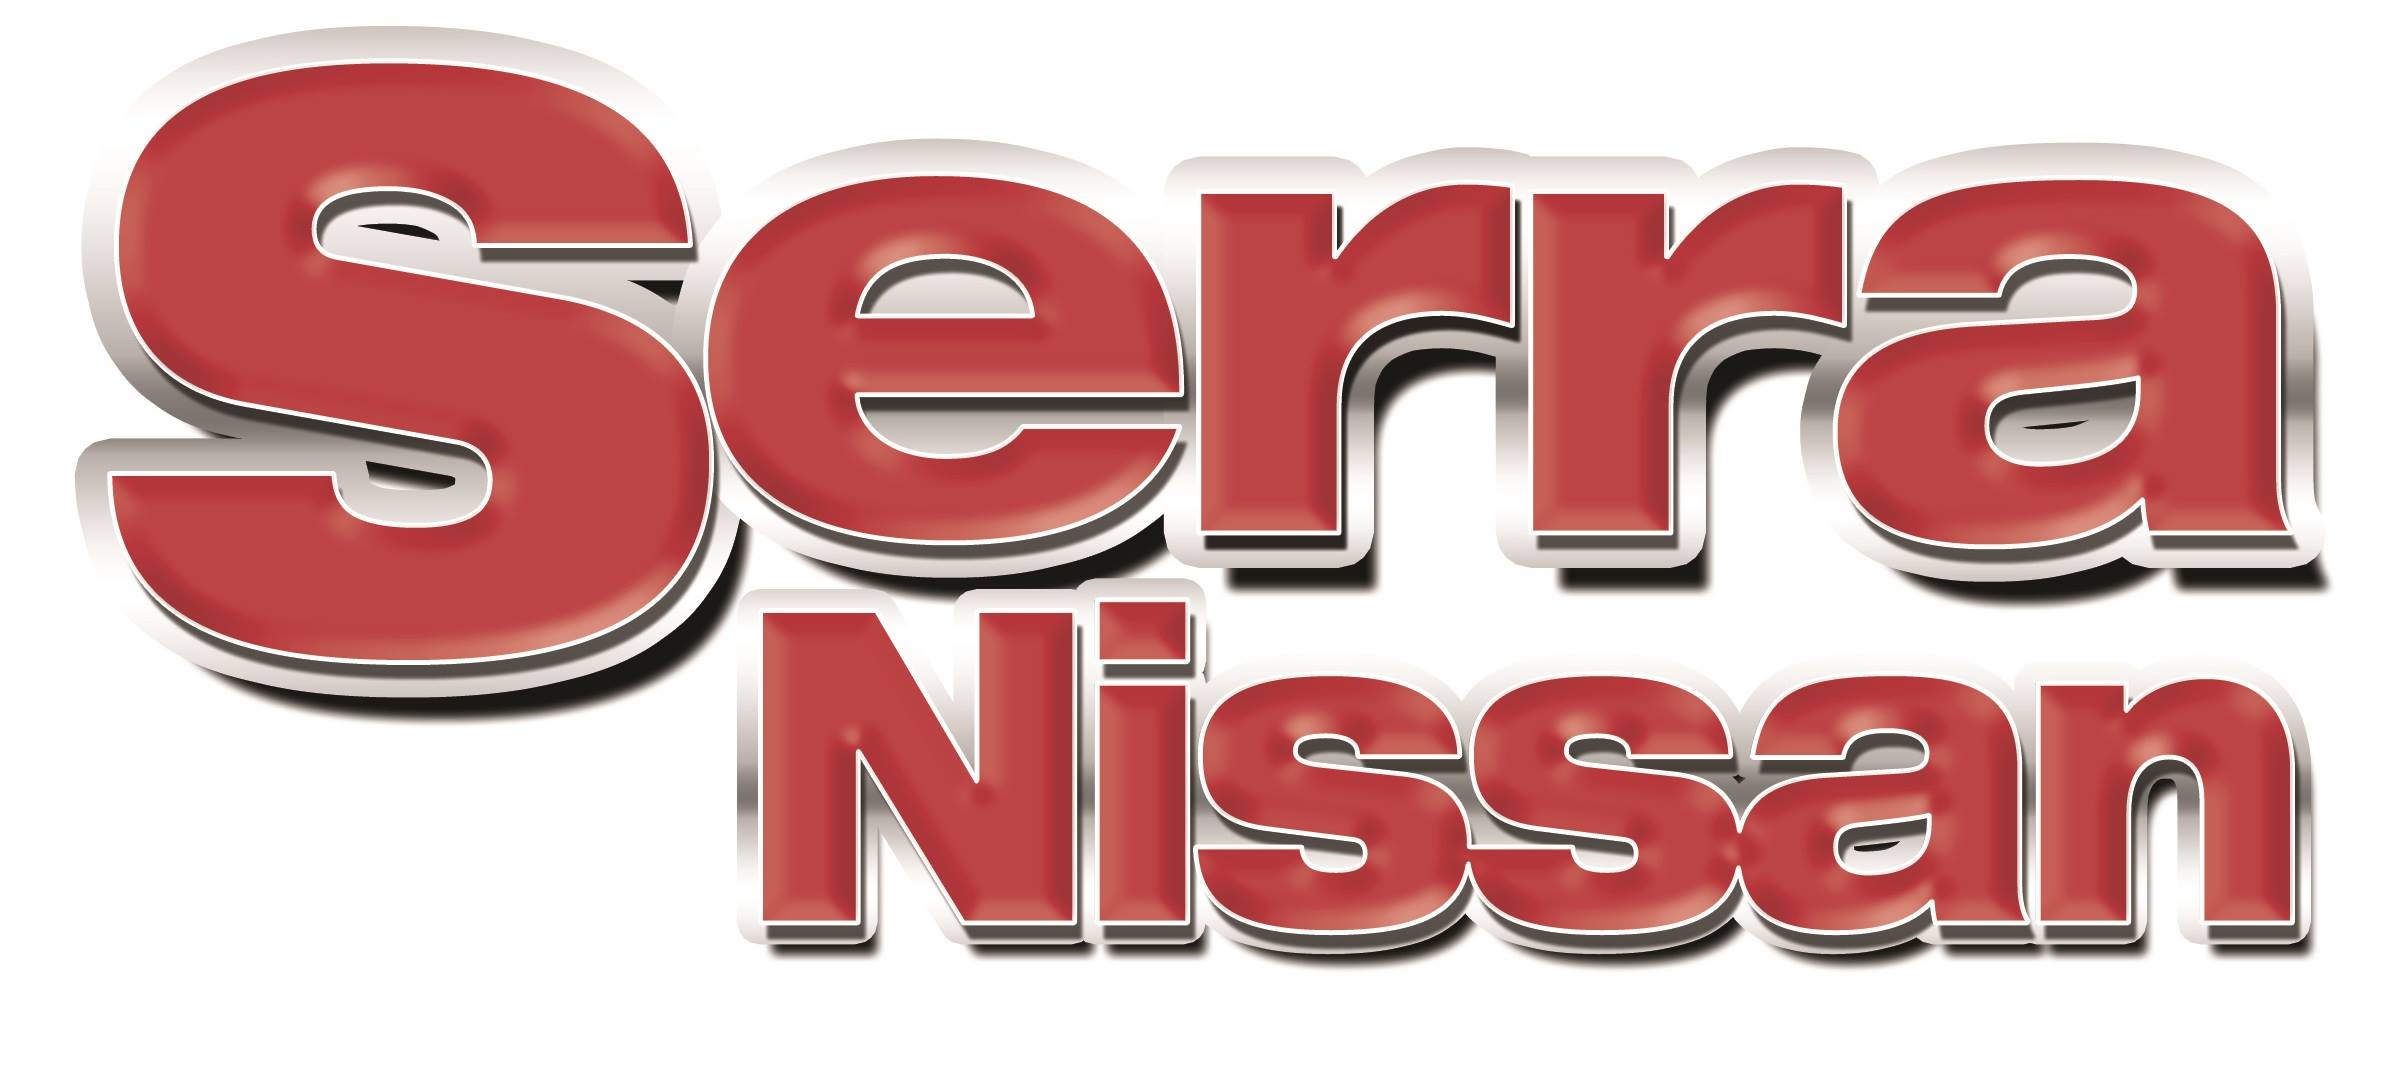 Company logo of Serra Nissan Service